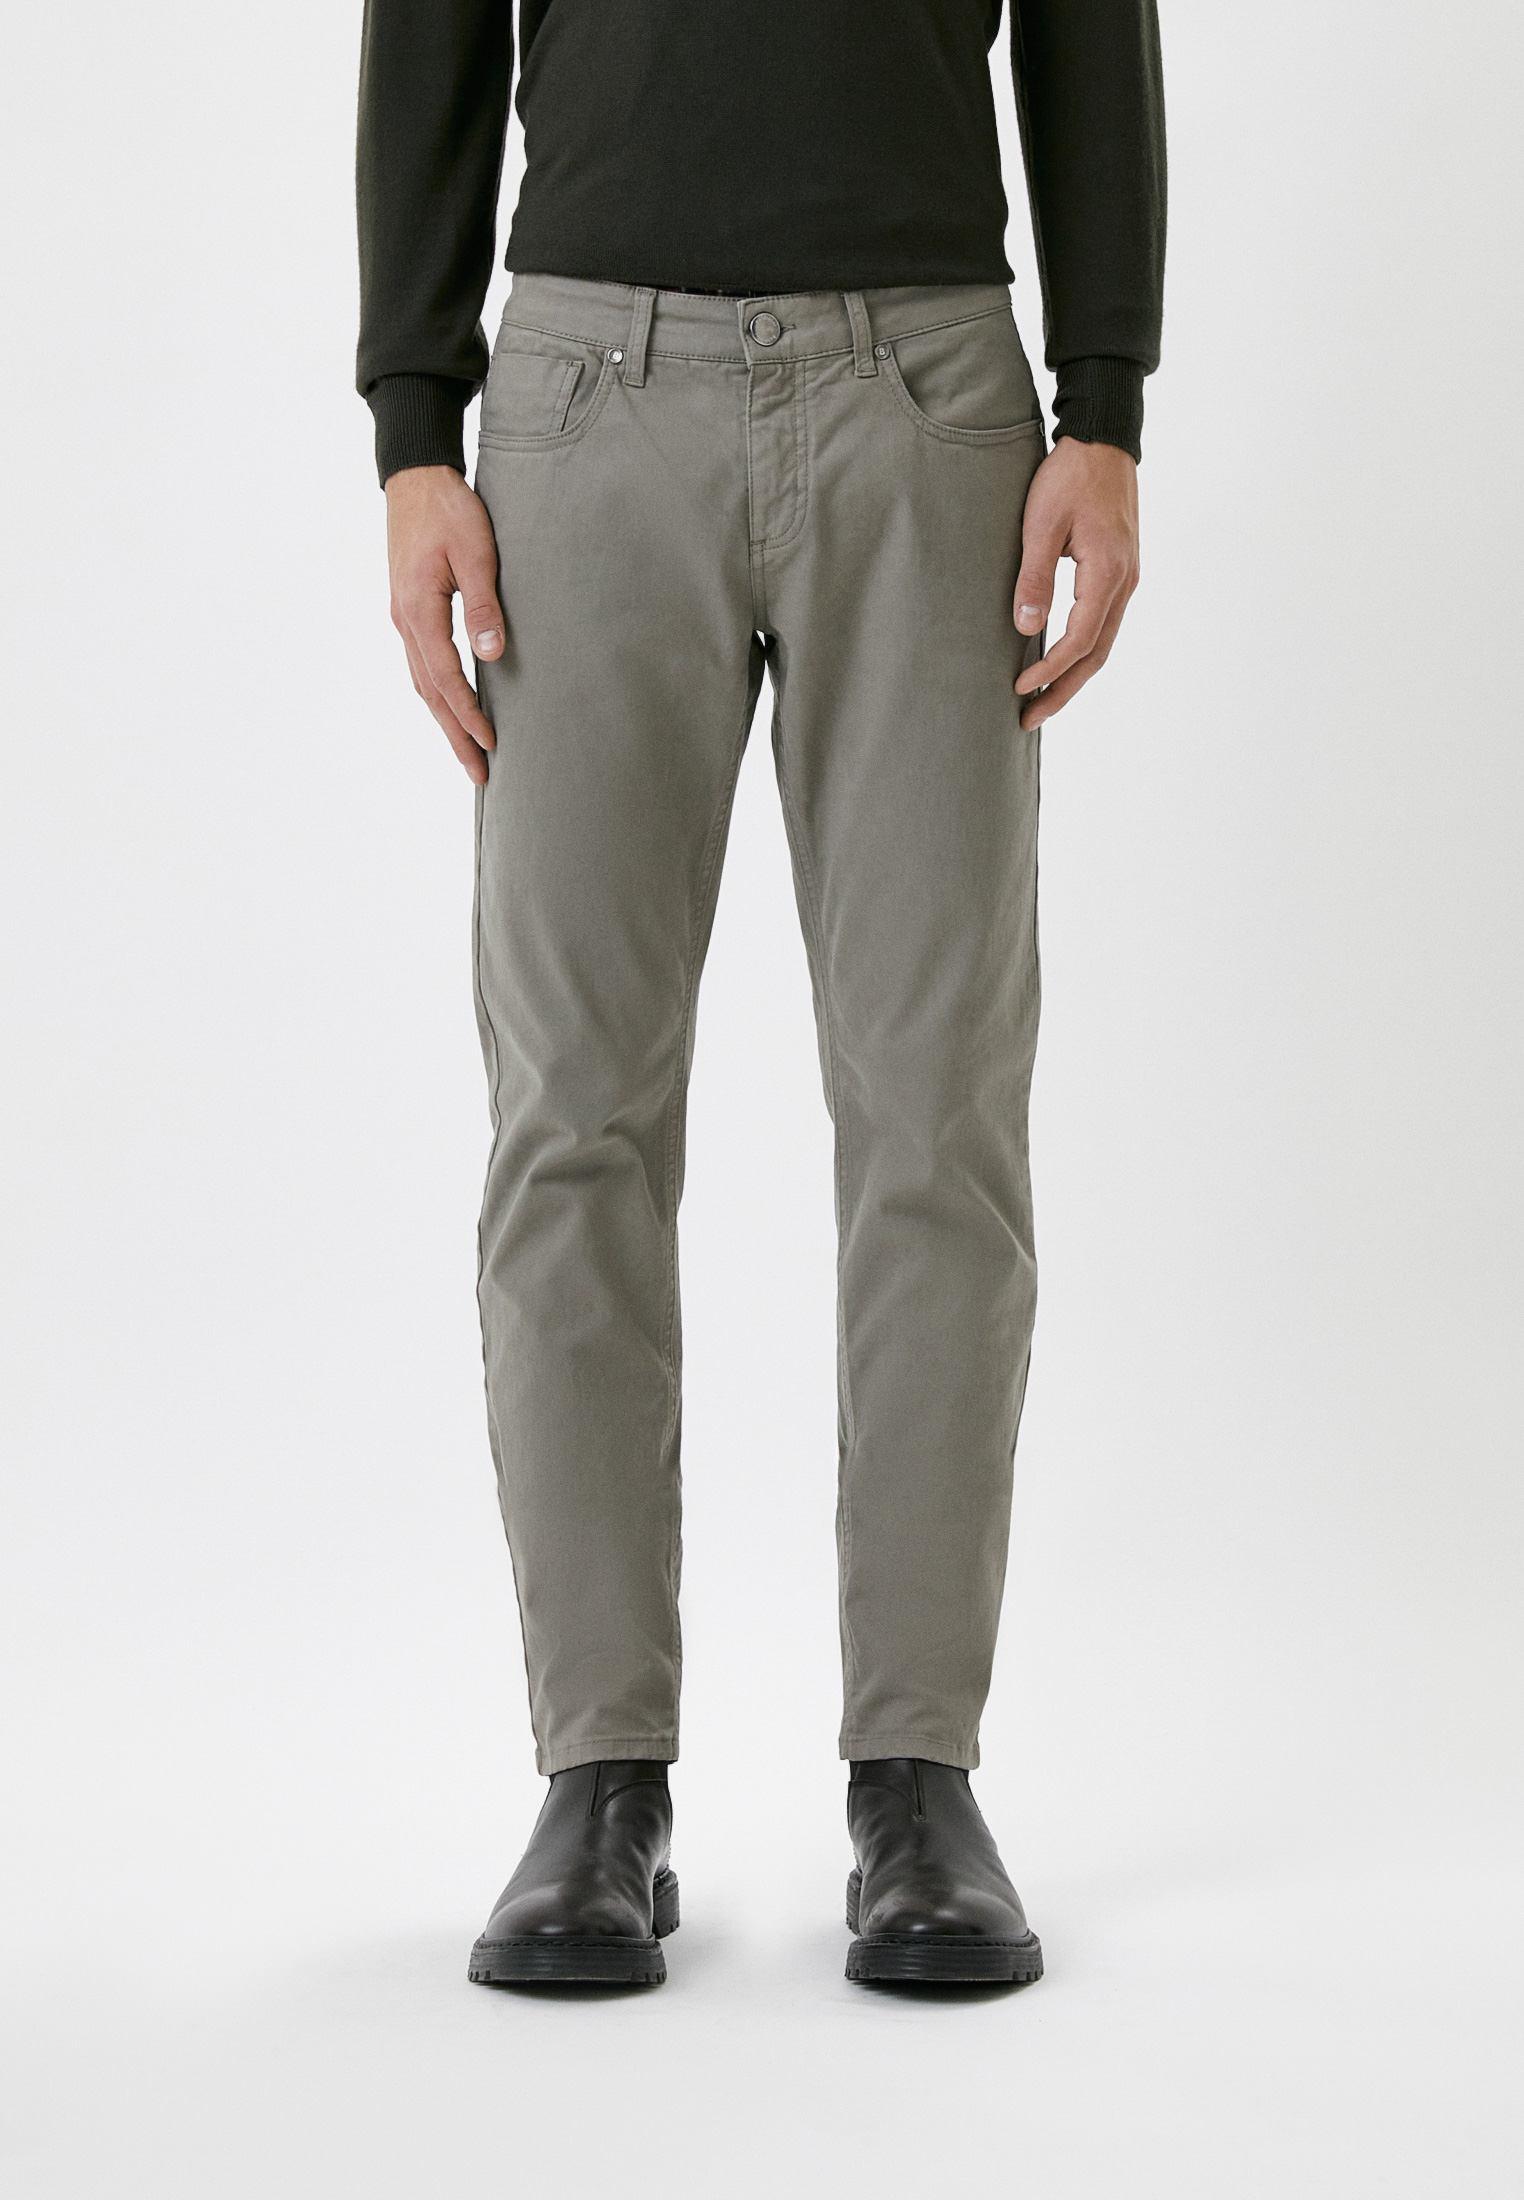 Мужские повседневные брюки Baldinini (Балдинини) M09: изображение 1